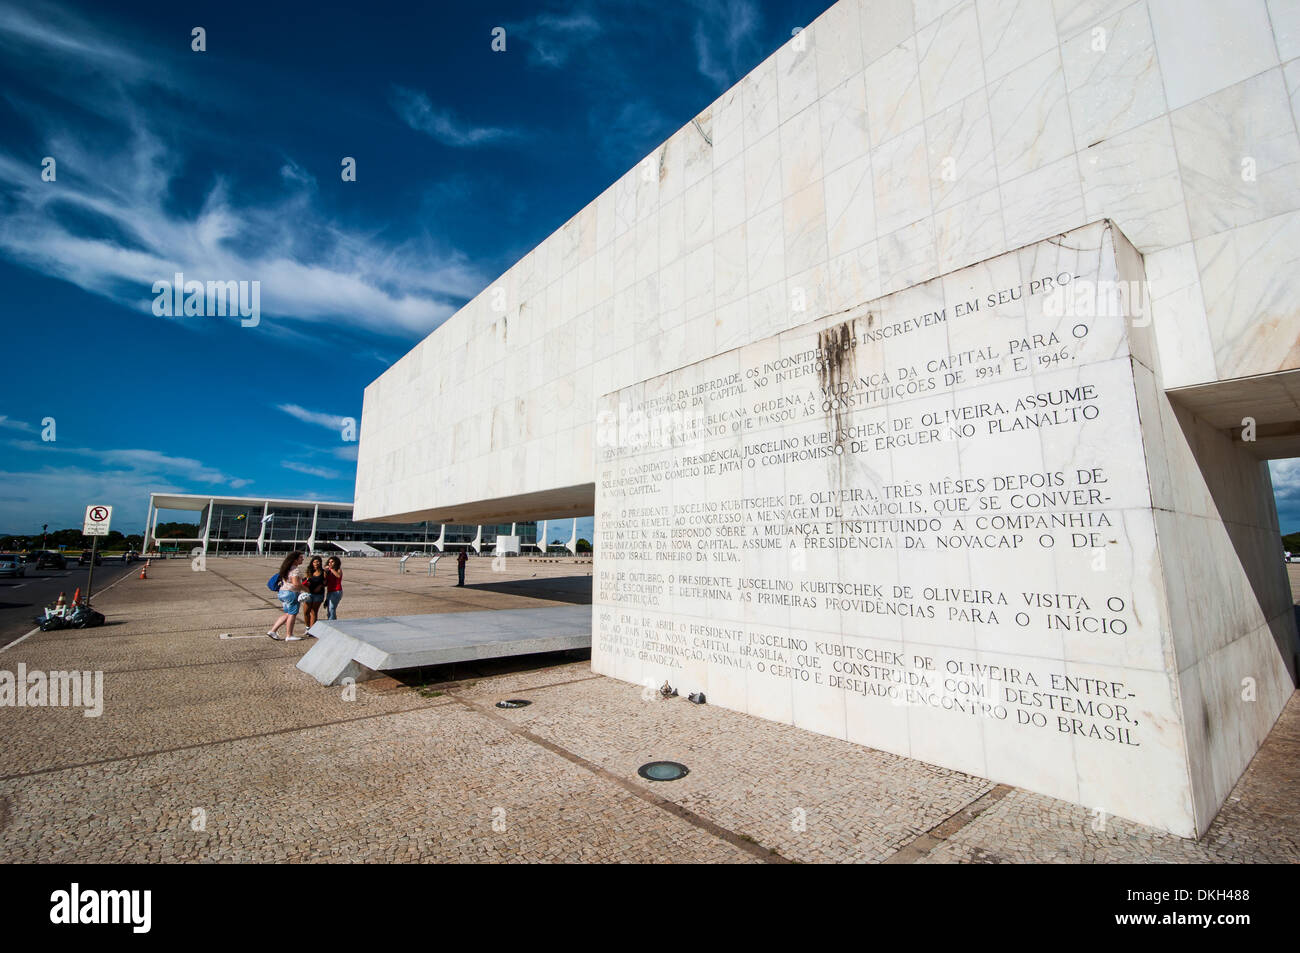 Juscelino Kubitschek Monument de la Place des Trois Pouvoirs à Brasilia, Brésil, Amérique du Sud Banque D'Images